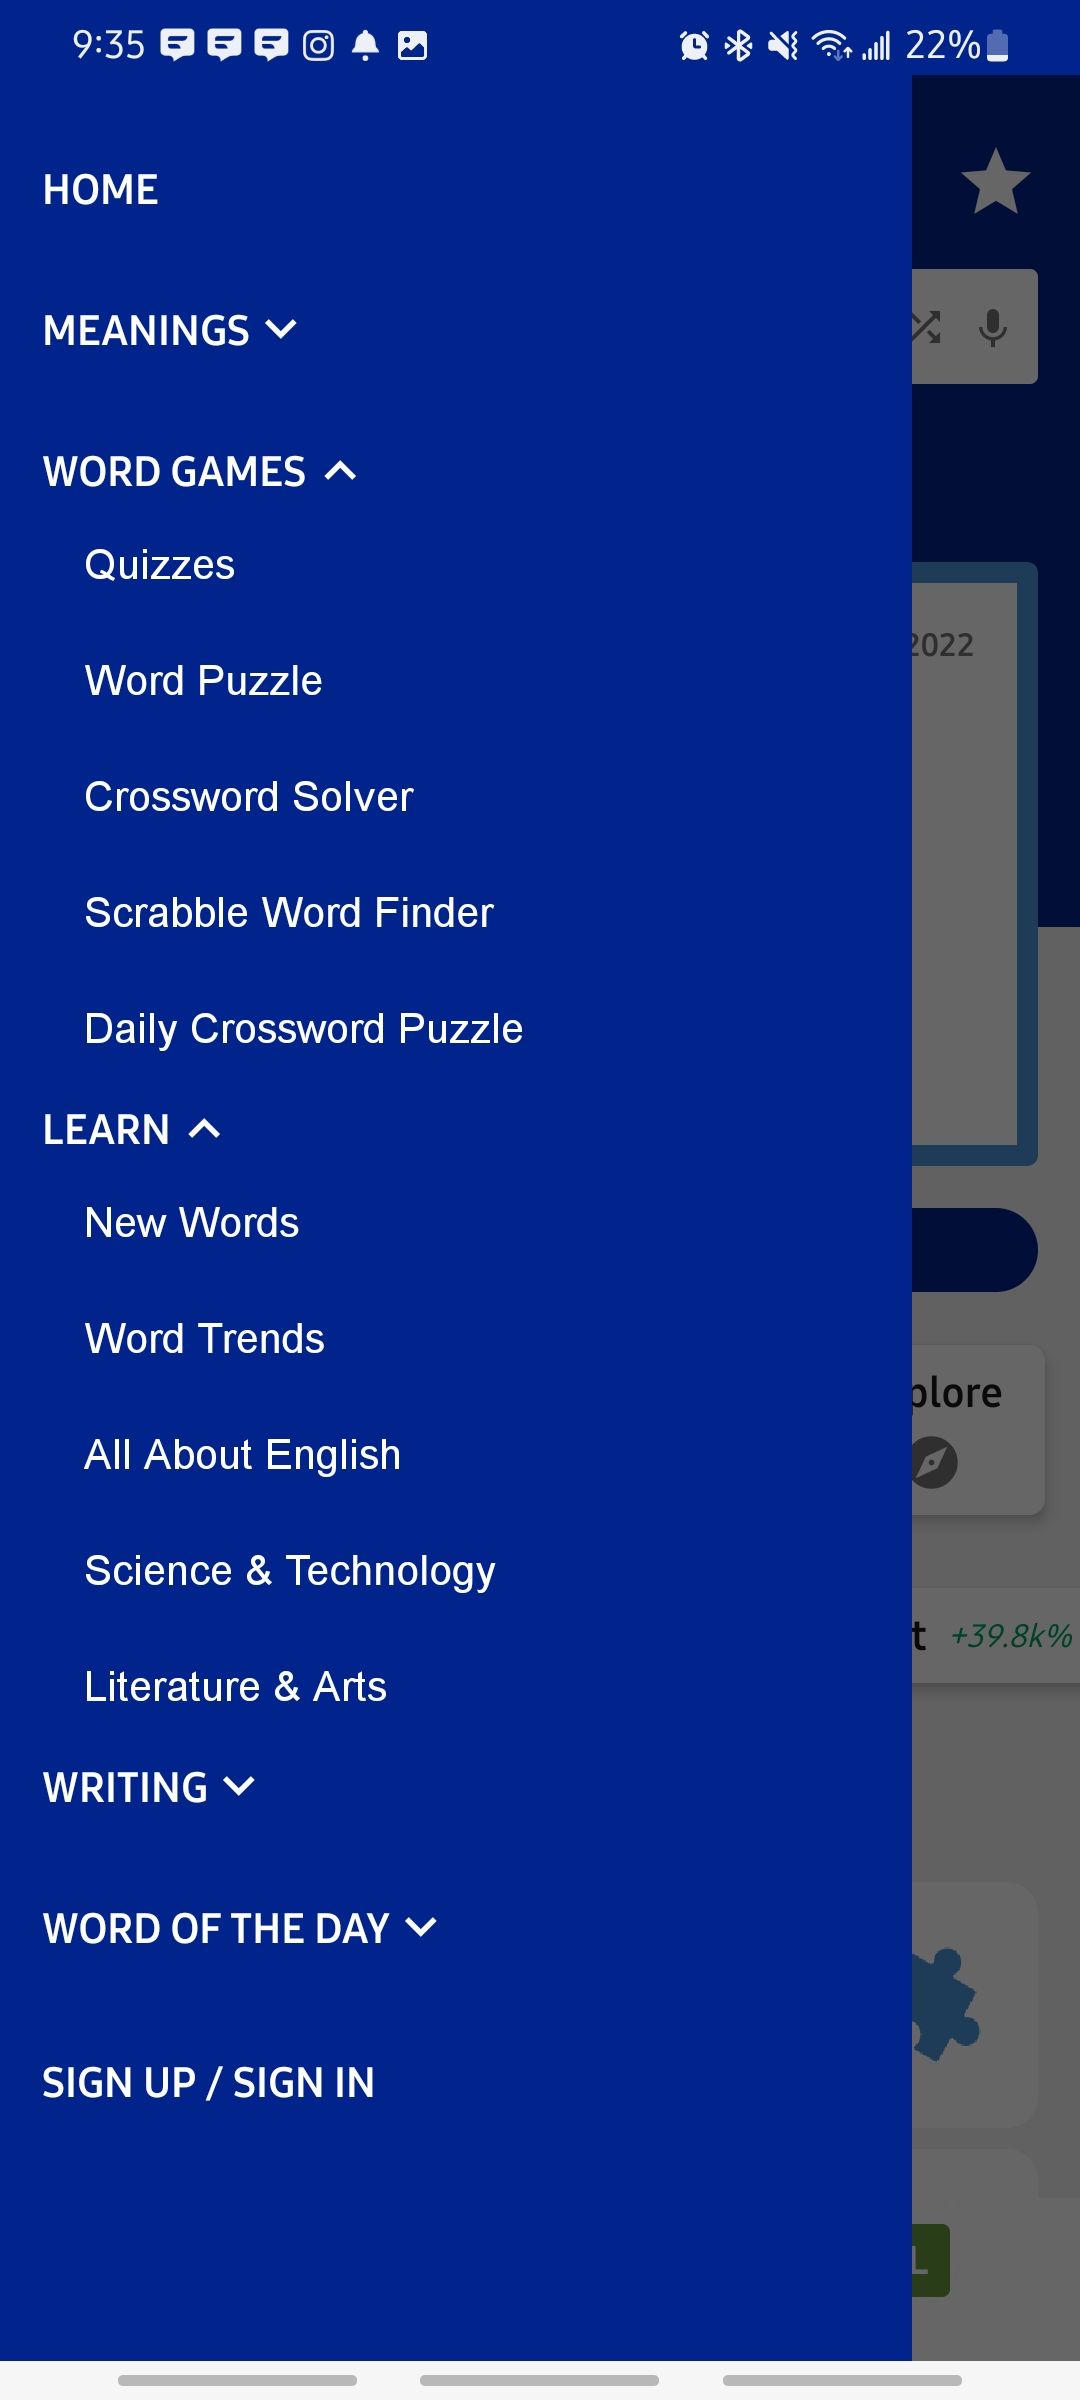 Dictionarycom app side bar menu